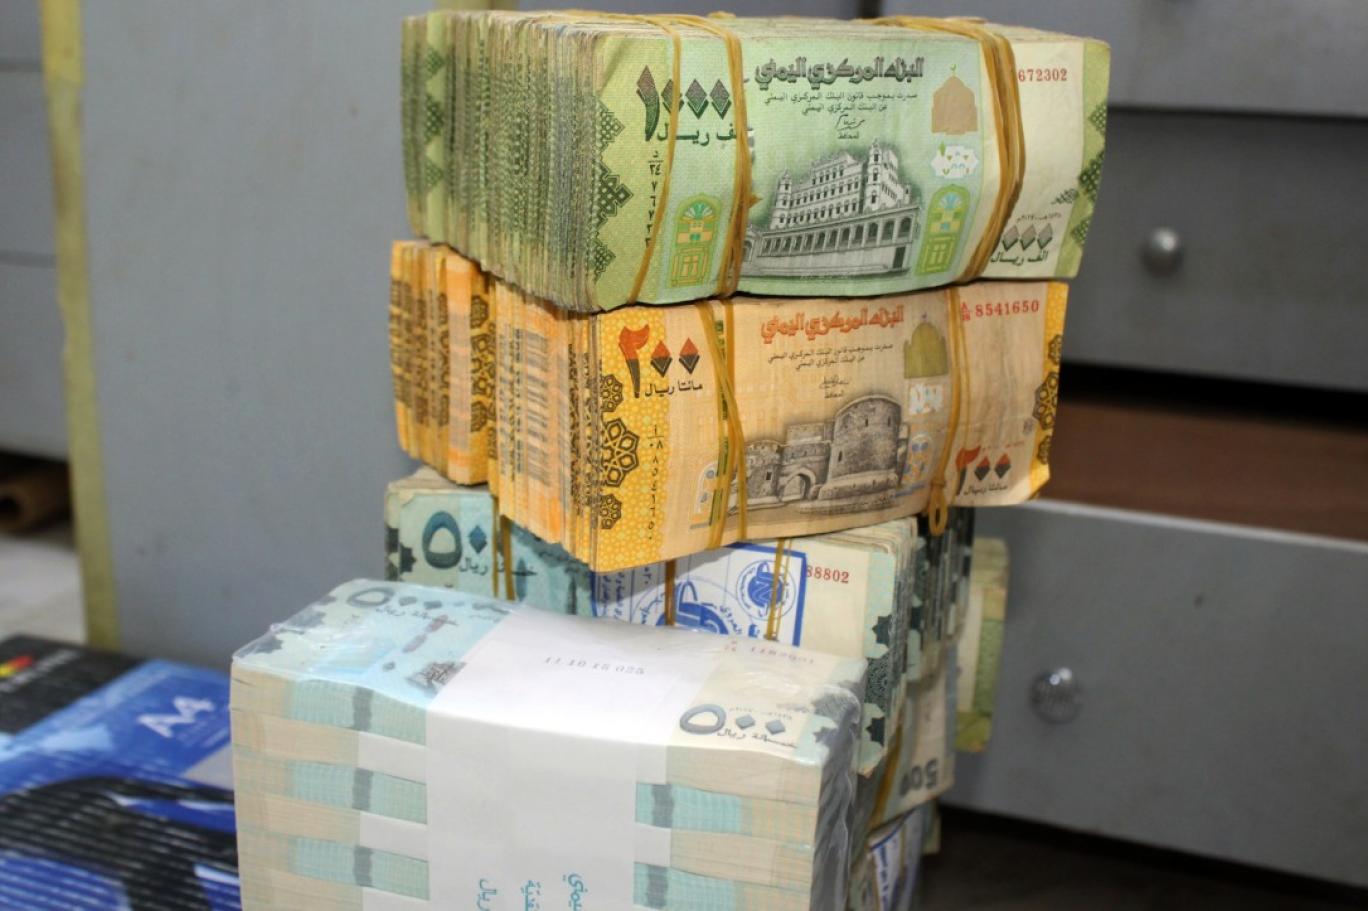 صحيفة سعودية: الحكومة اليمنية تواجه أزمة مالية حادة غير مسبوقة بسبب الهجمات على الموانئ